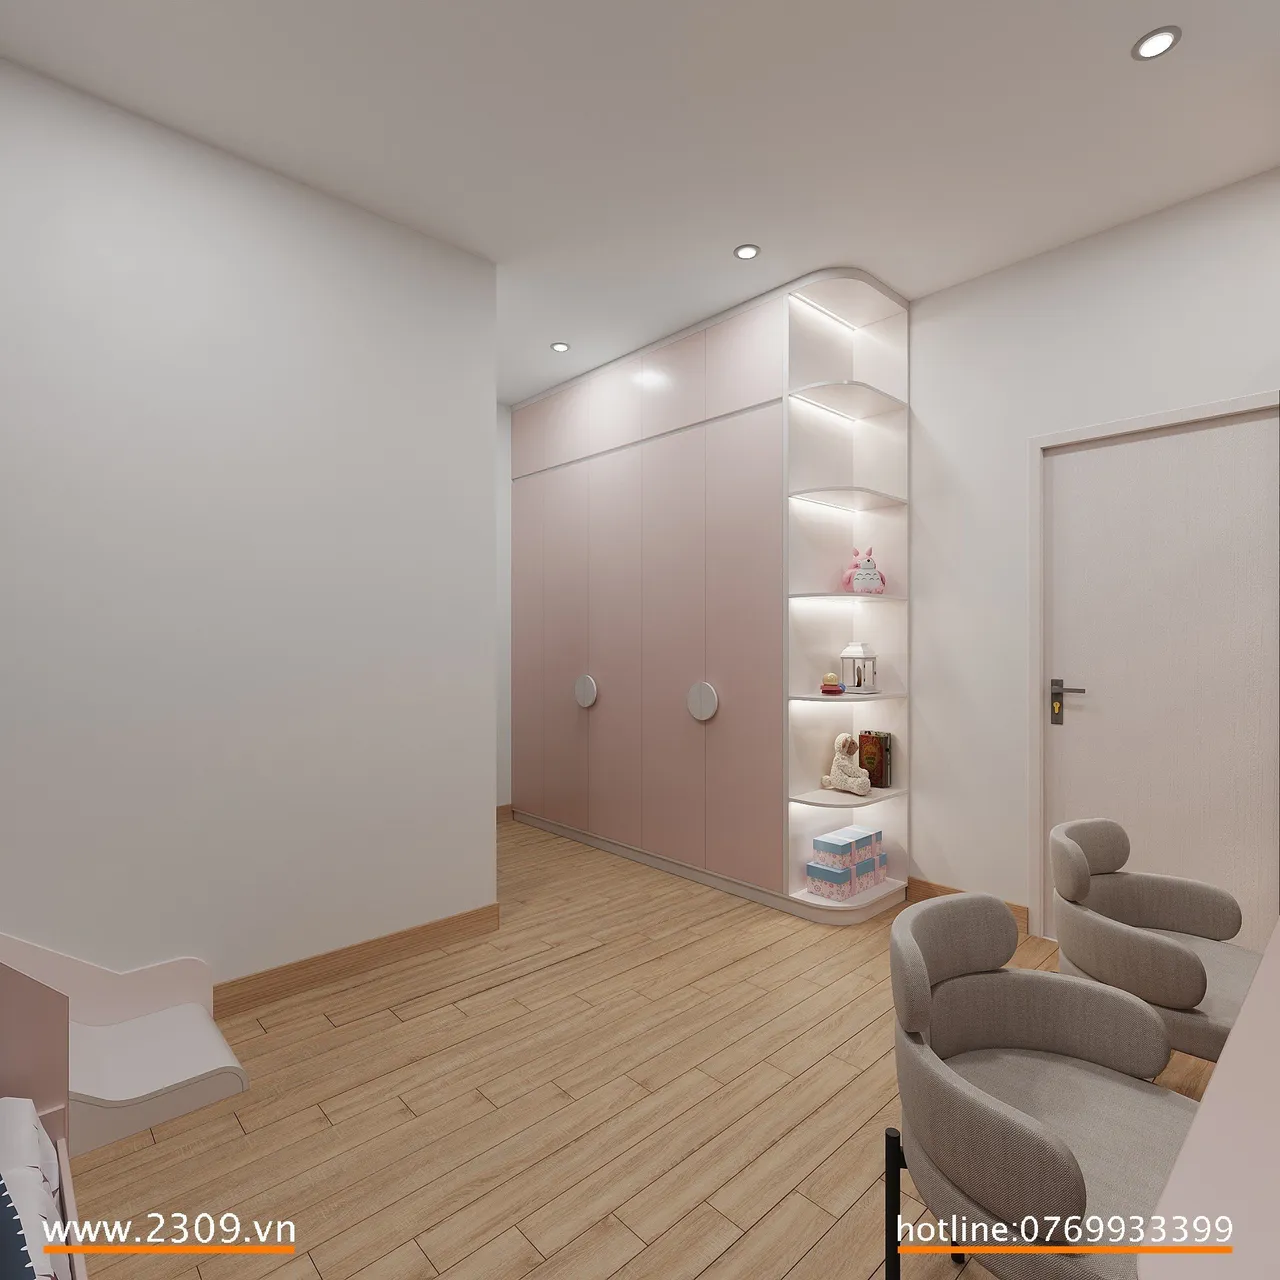 Concept nội thất phòng ngủ cho bé Nhà phố Him Lam Phú Đông phong cách hiện đại Modern